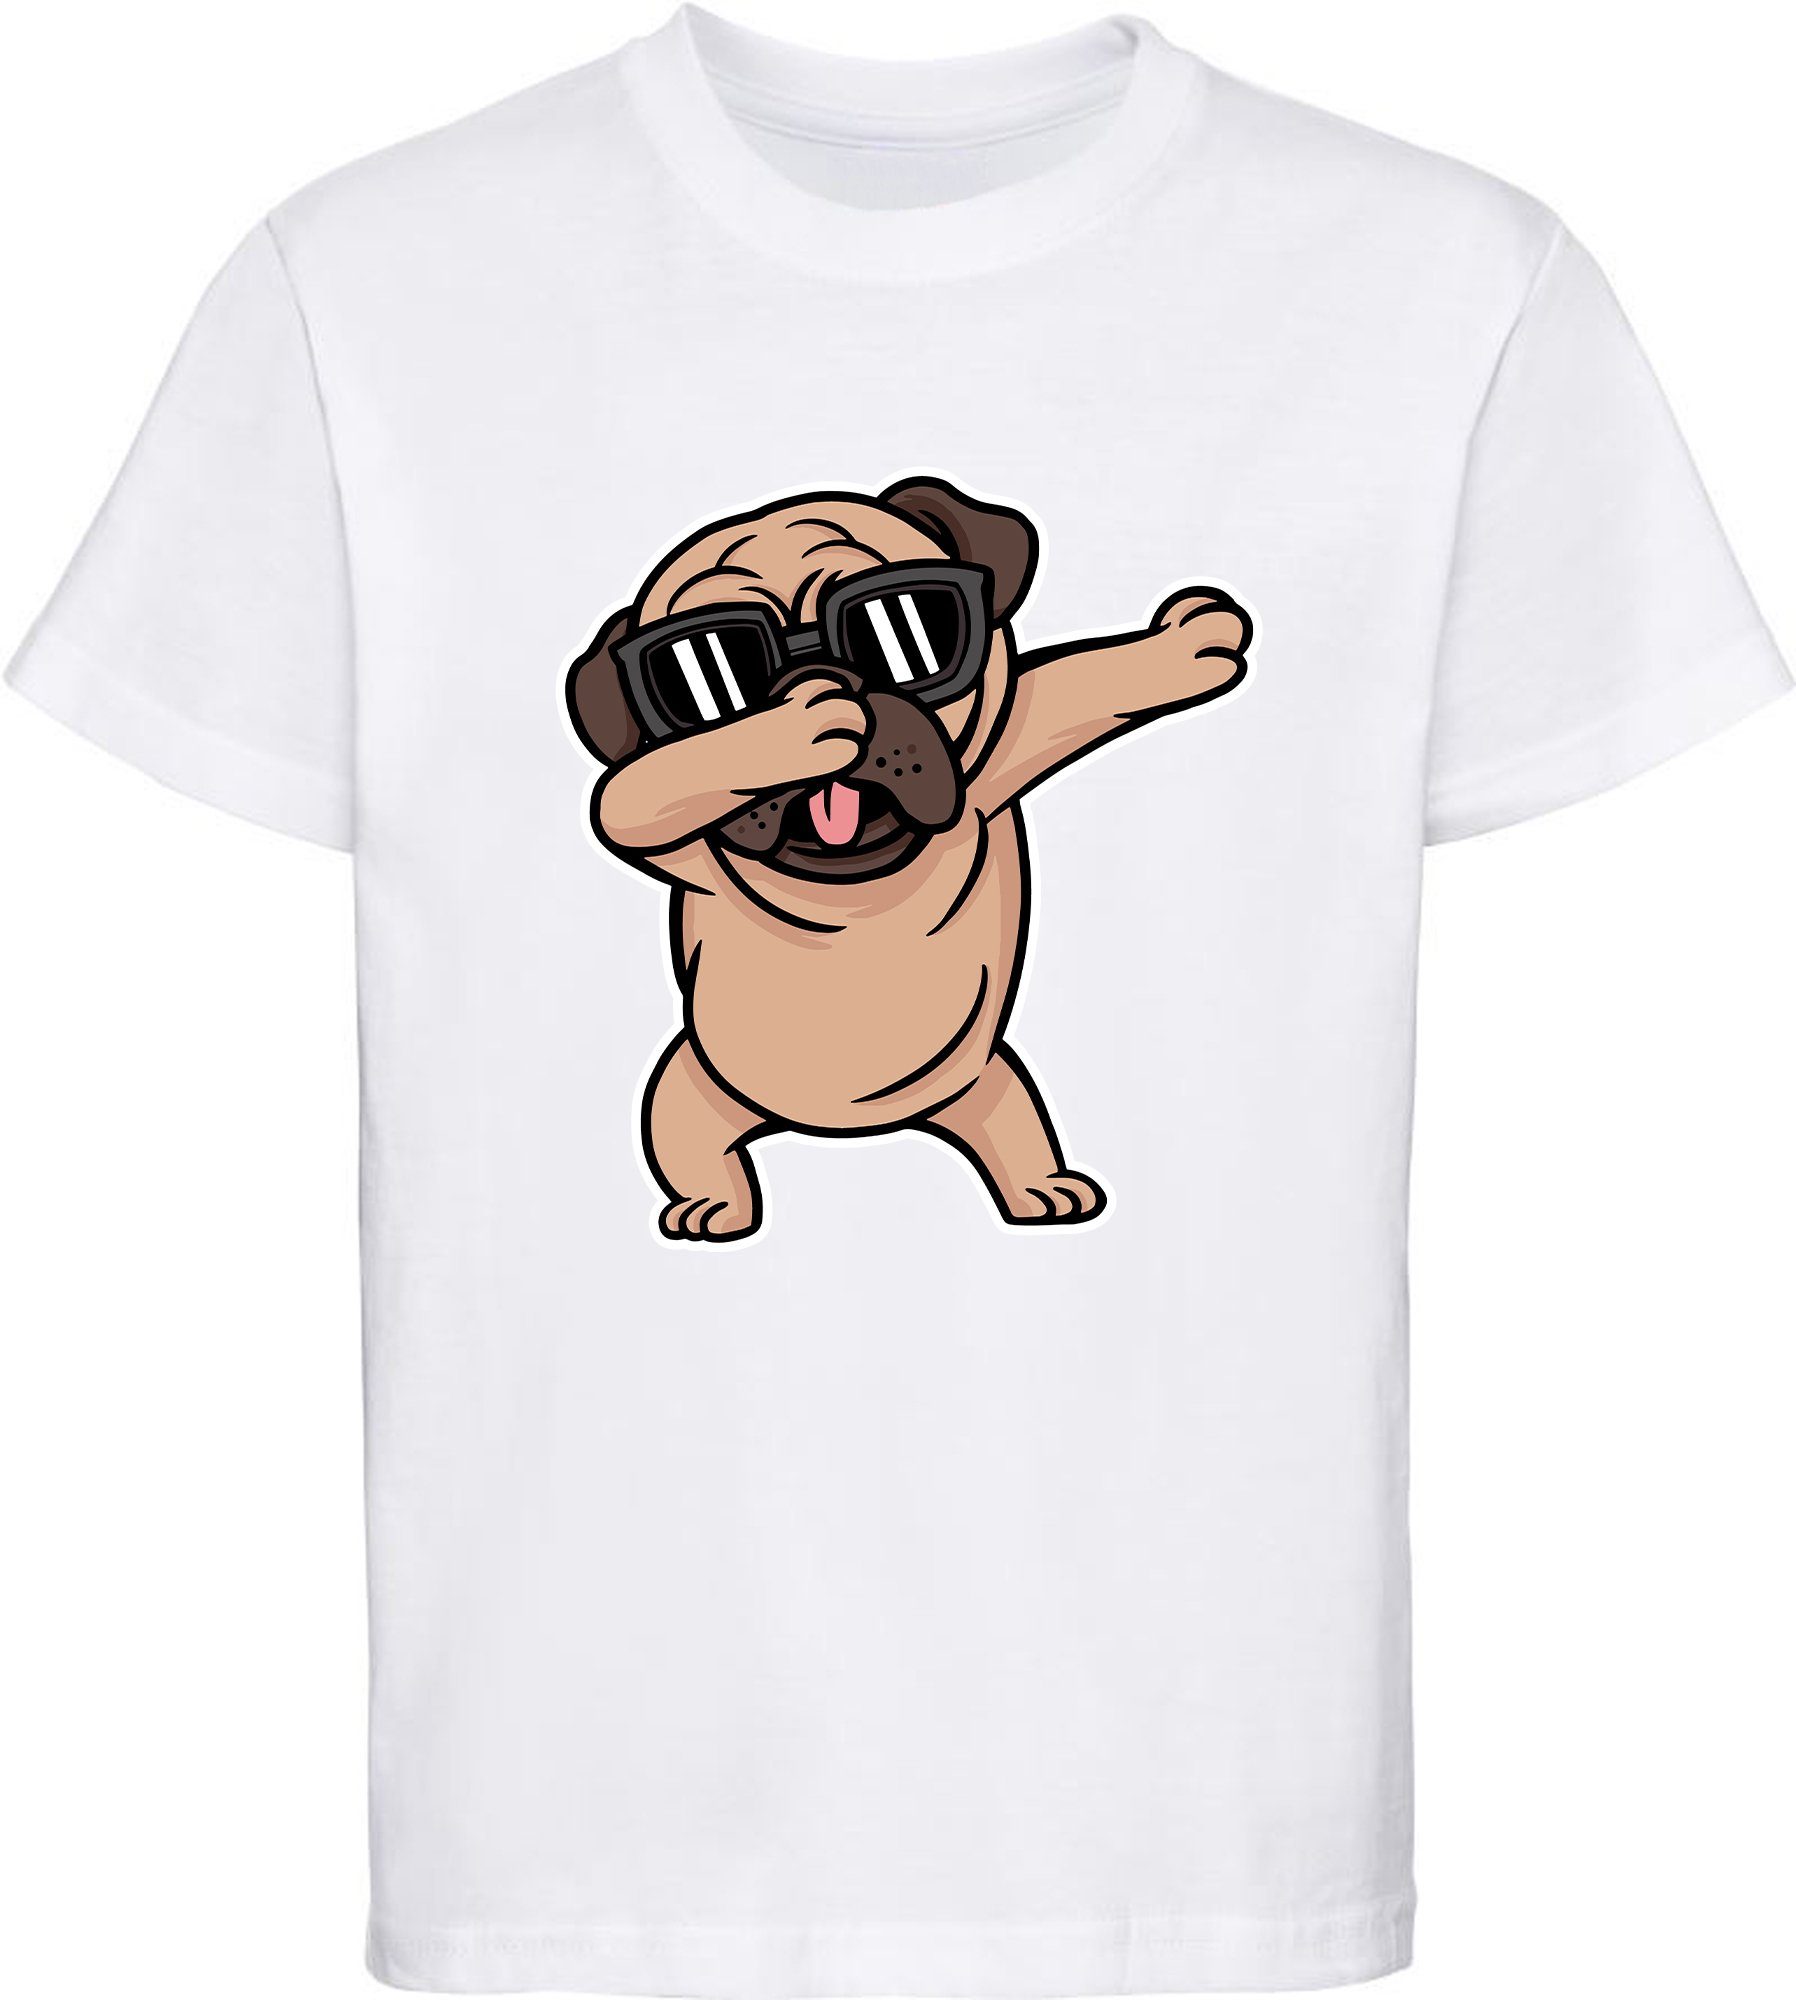 Marktstand MyDesign24 Print-Shirt Kinder Hunde bedruckt i239 T-Shirt mit Cooler Skateboard mit weiss Baumwollshirt Aufdruck, - Hund